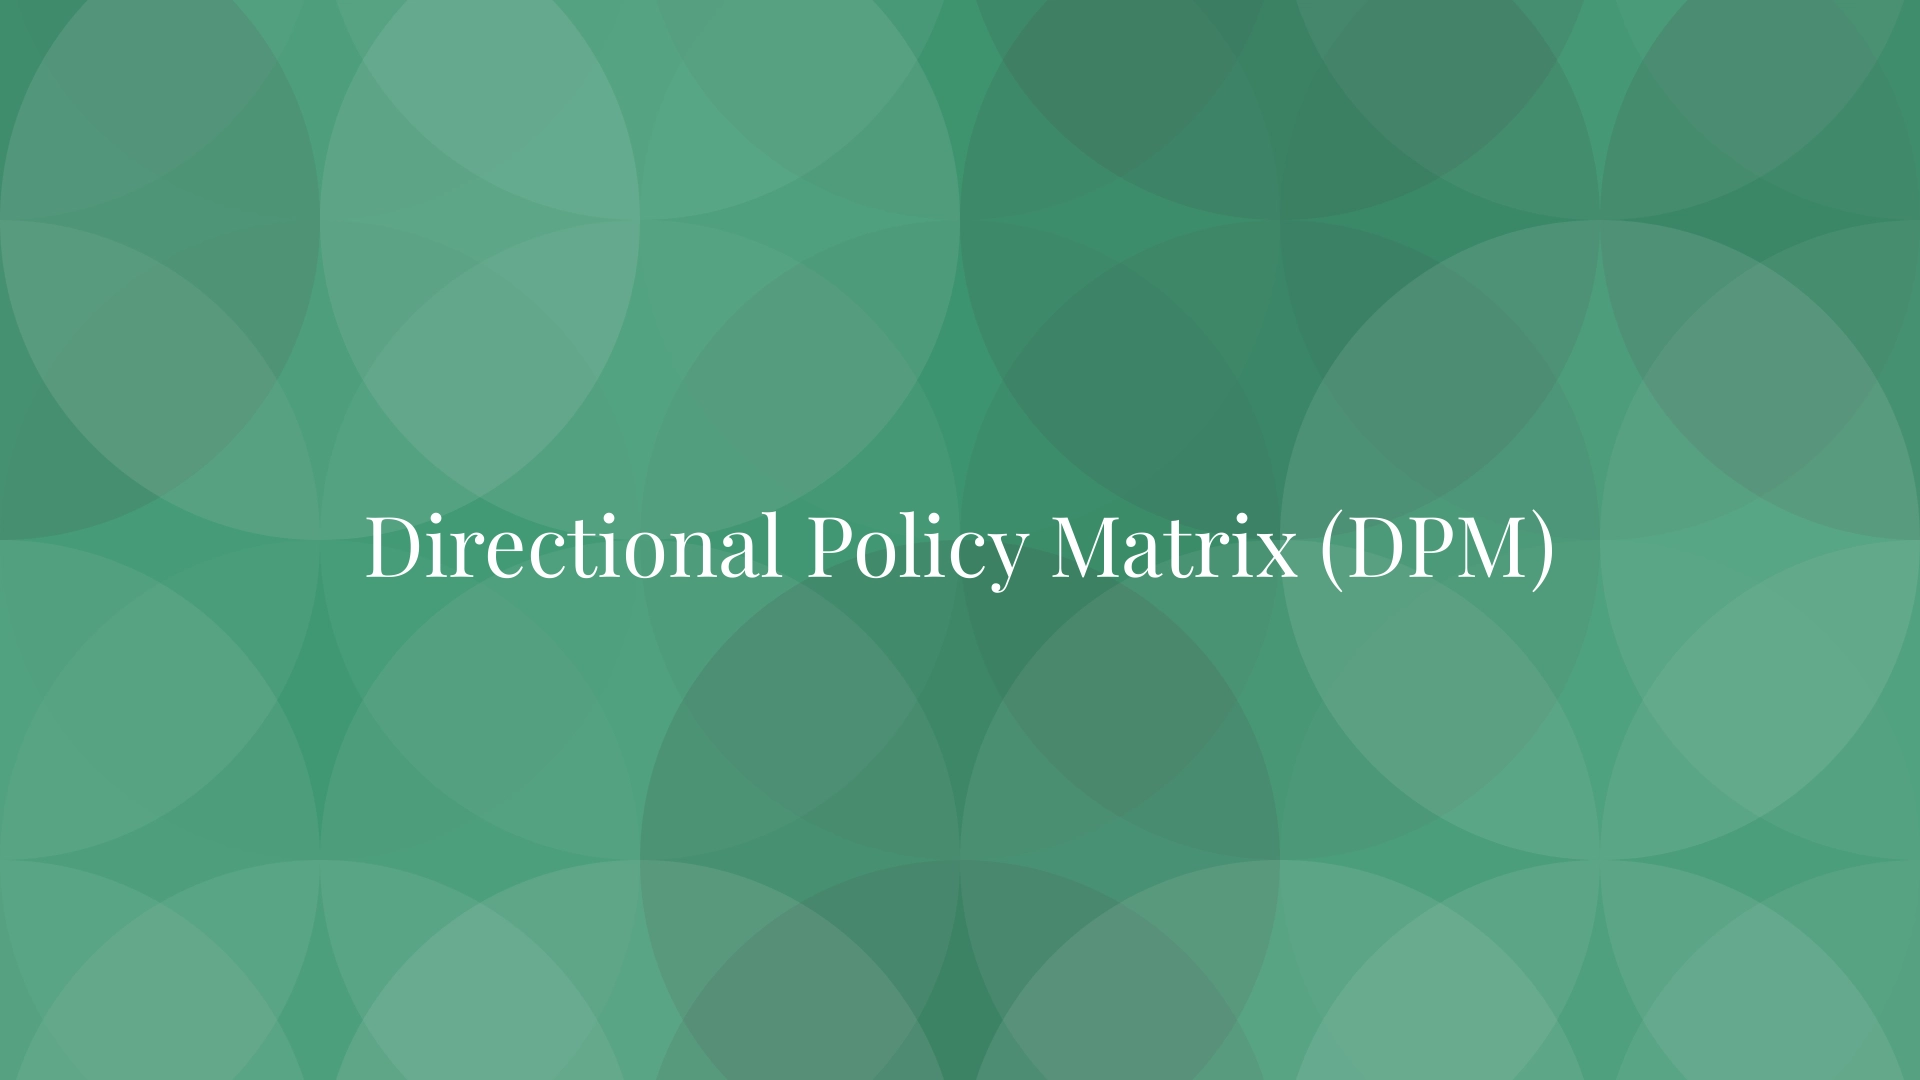 Matriz de políticas direccionales (DPM)